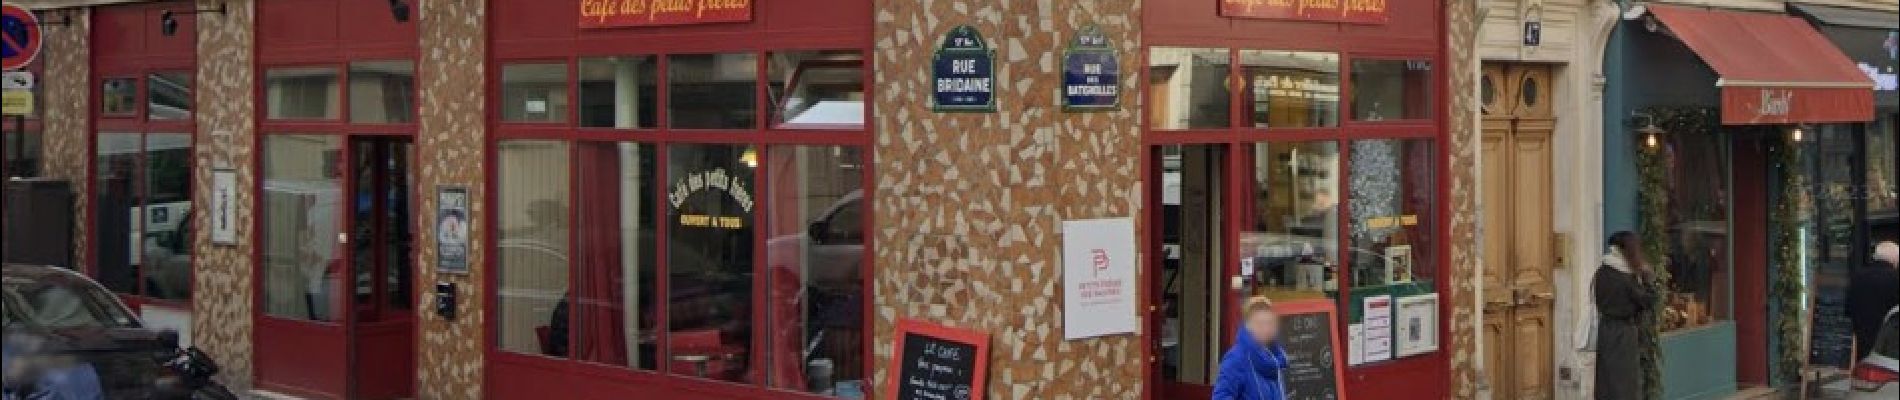 Punto di interesse Parigi - Café le moins cher de Paris - Photo